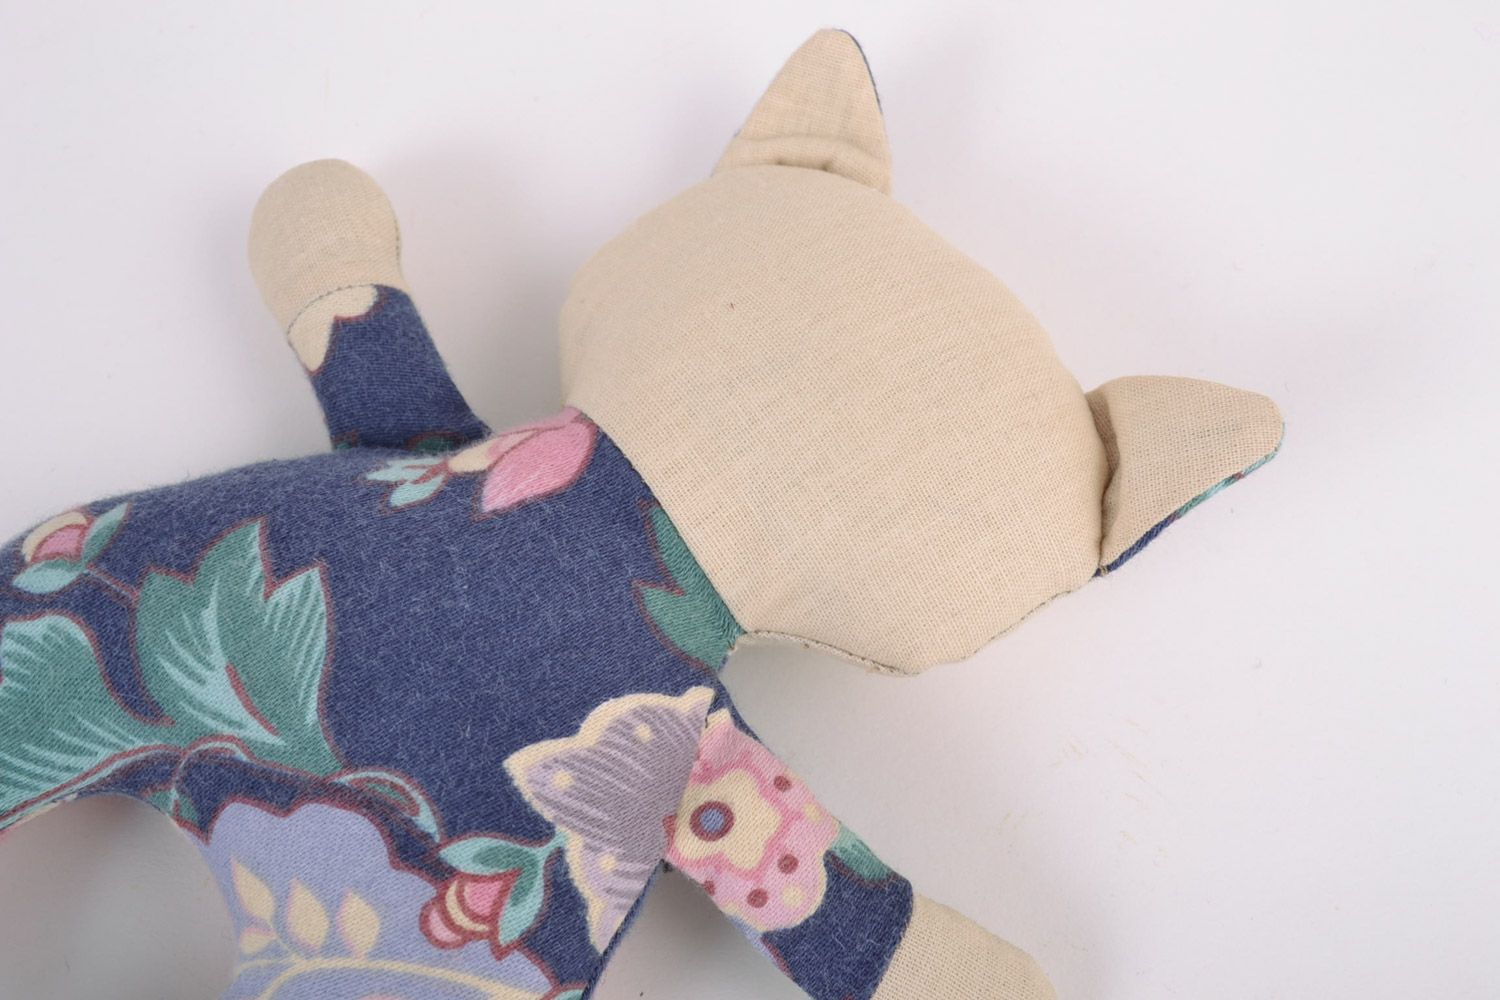 Textil Kuscheltier Kater blumig aus Baumwolle schön handmade Spielzeug für Kinder foto 3